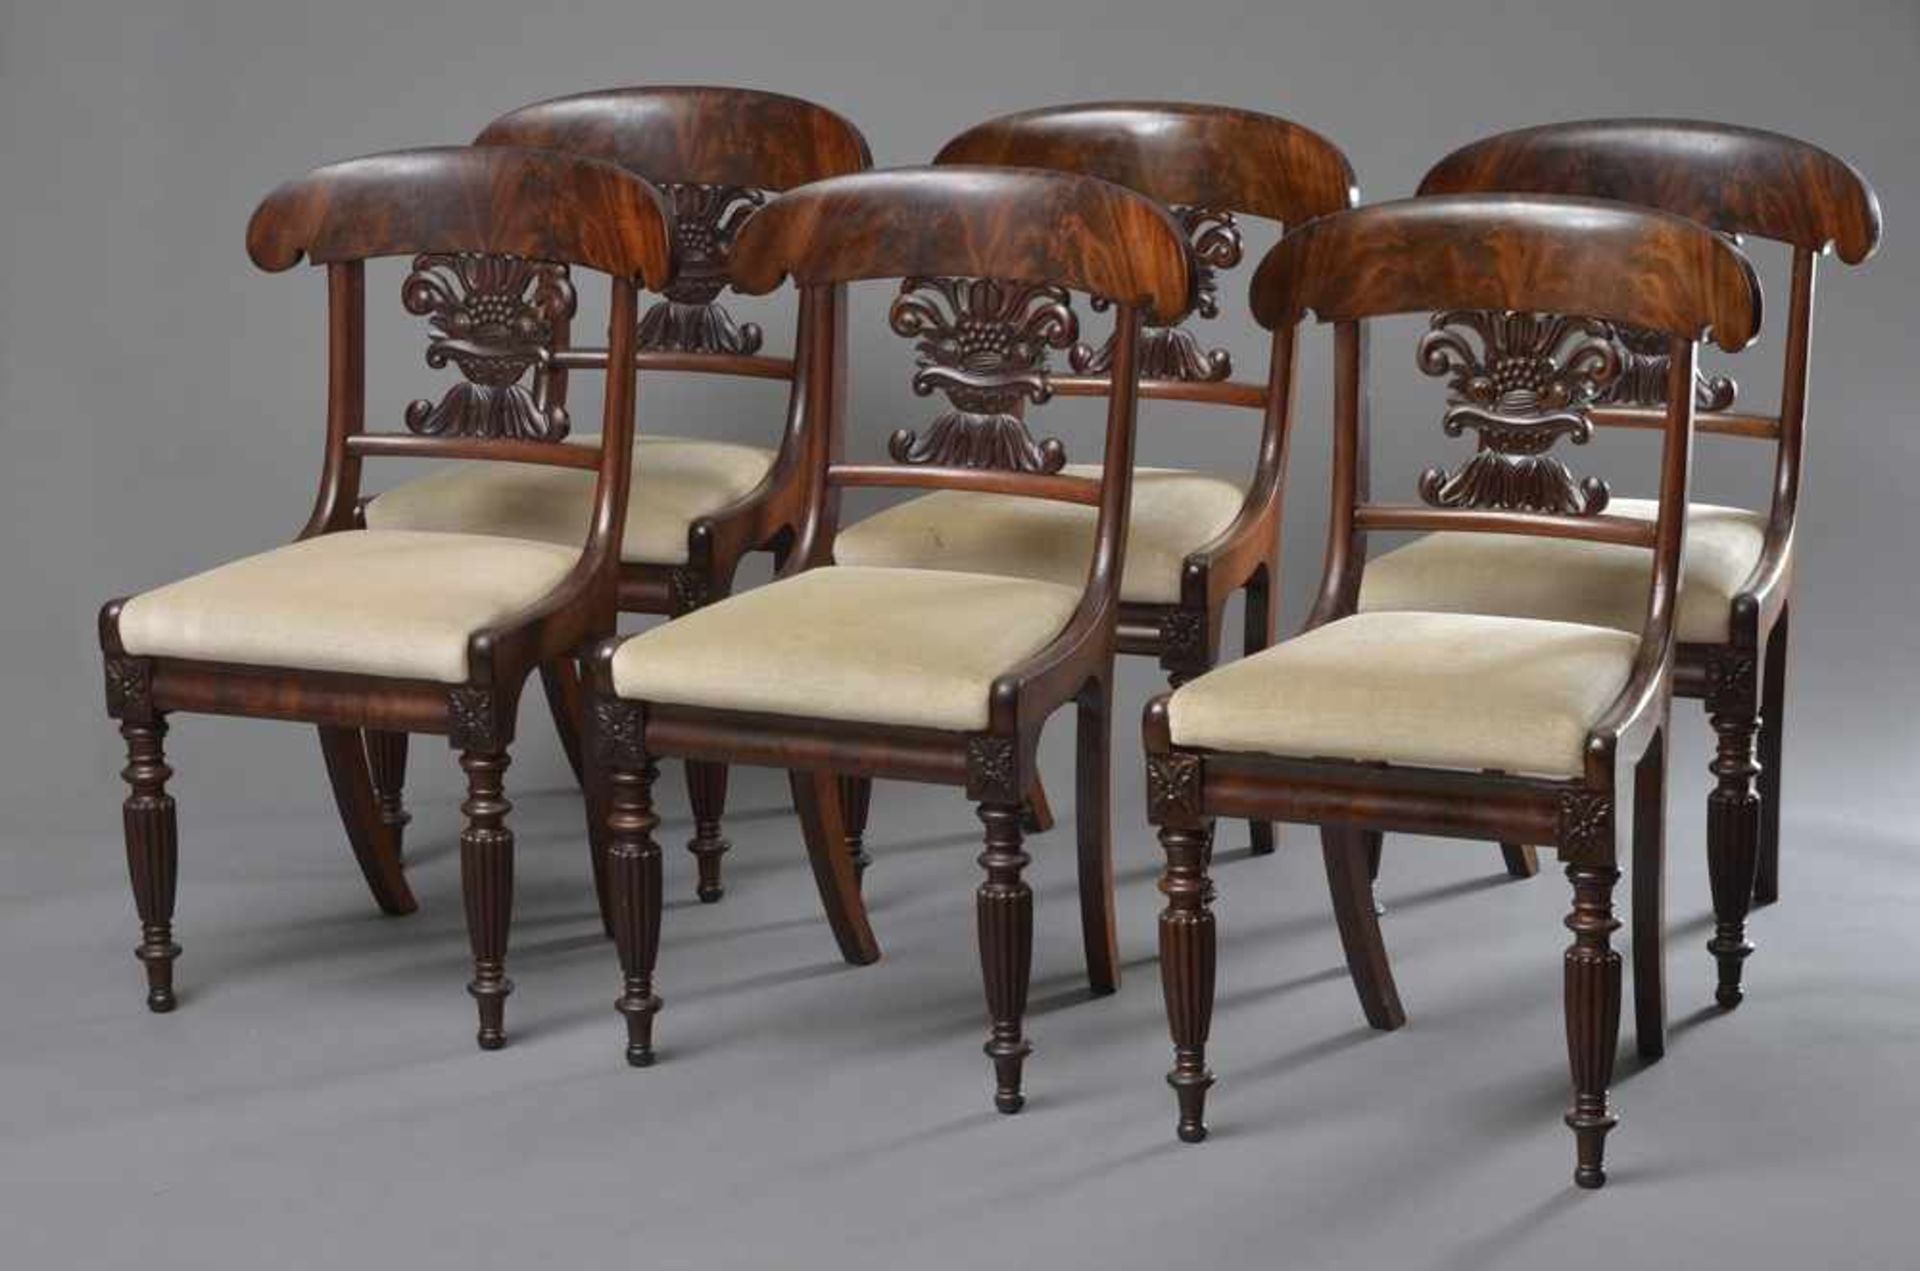 6 Biedermeier Stühle mit Schaufellehne und "Fruchtkorb" Schnitzerei i.d. Lehne, gedrechselte